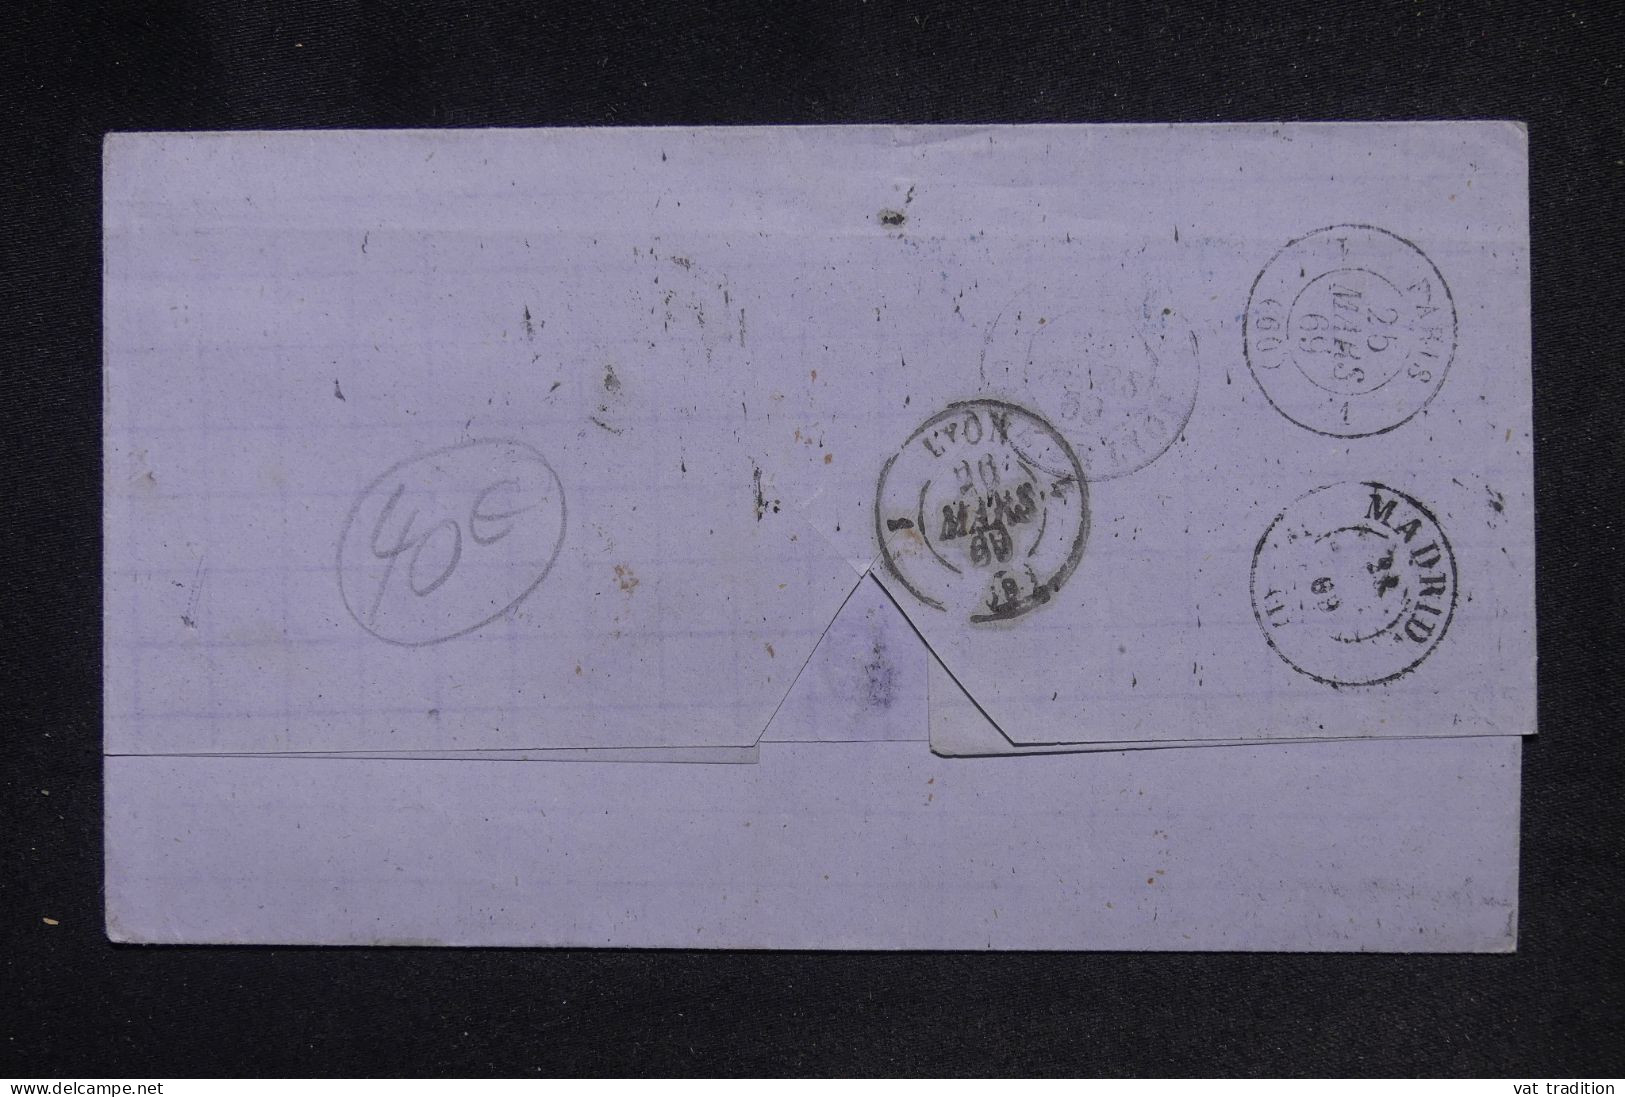 ESPAGNE - Lettre De Sévilla Pour La France En 1869 - L 147789 - Brieven En Documenten